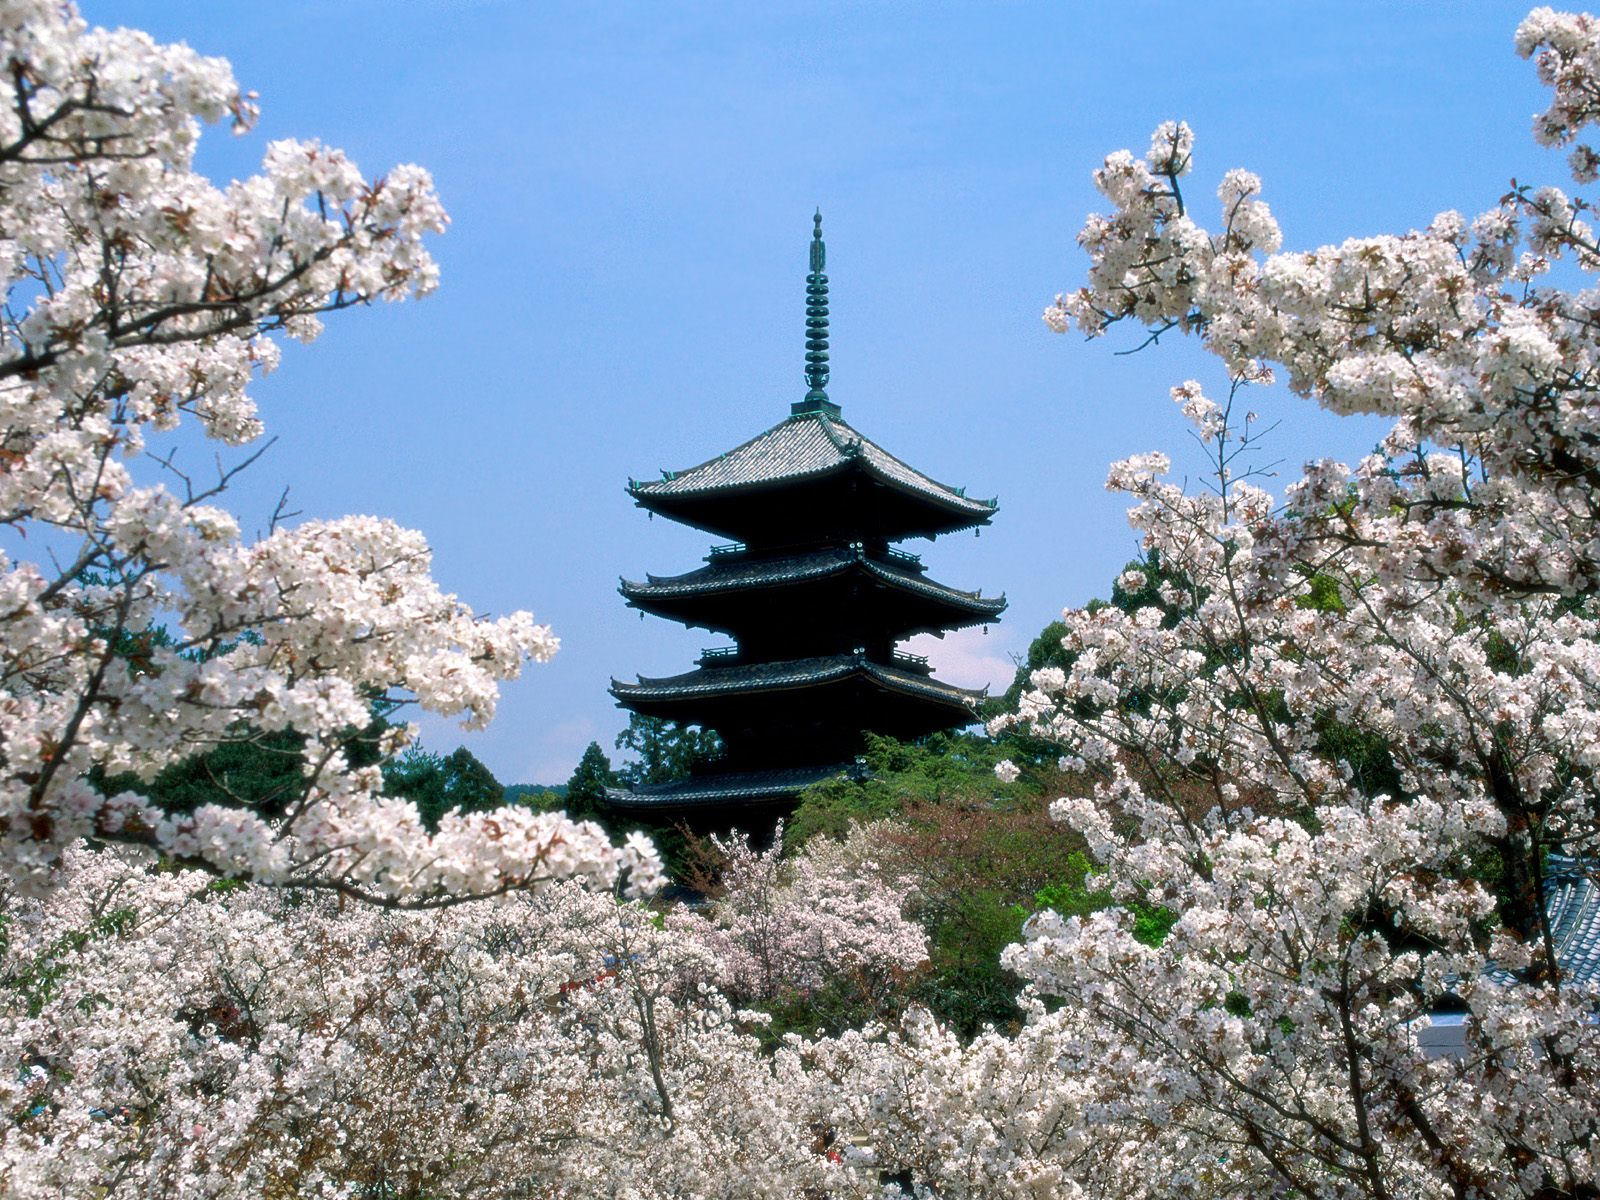 http://4.bp.blogspot.com/-ECxw36vF-20/TxRegV31nAI/AAAAAAAAARs/R7KCVgyYAws/s1600/Japanese+wallpaper_Cherry+Blossoms.jpg